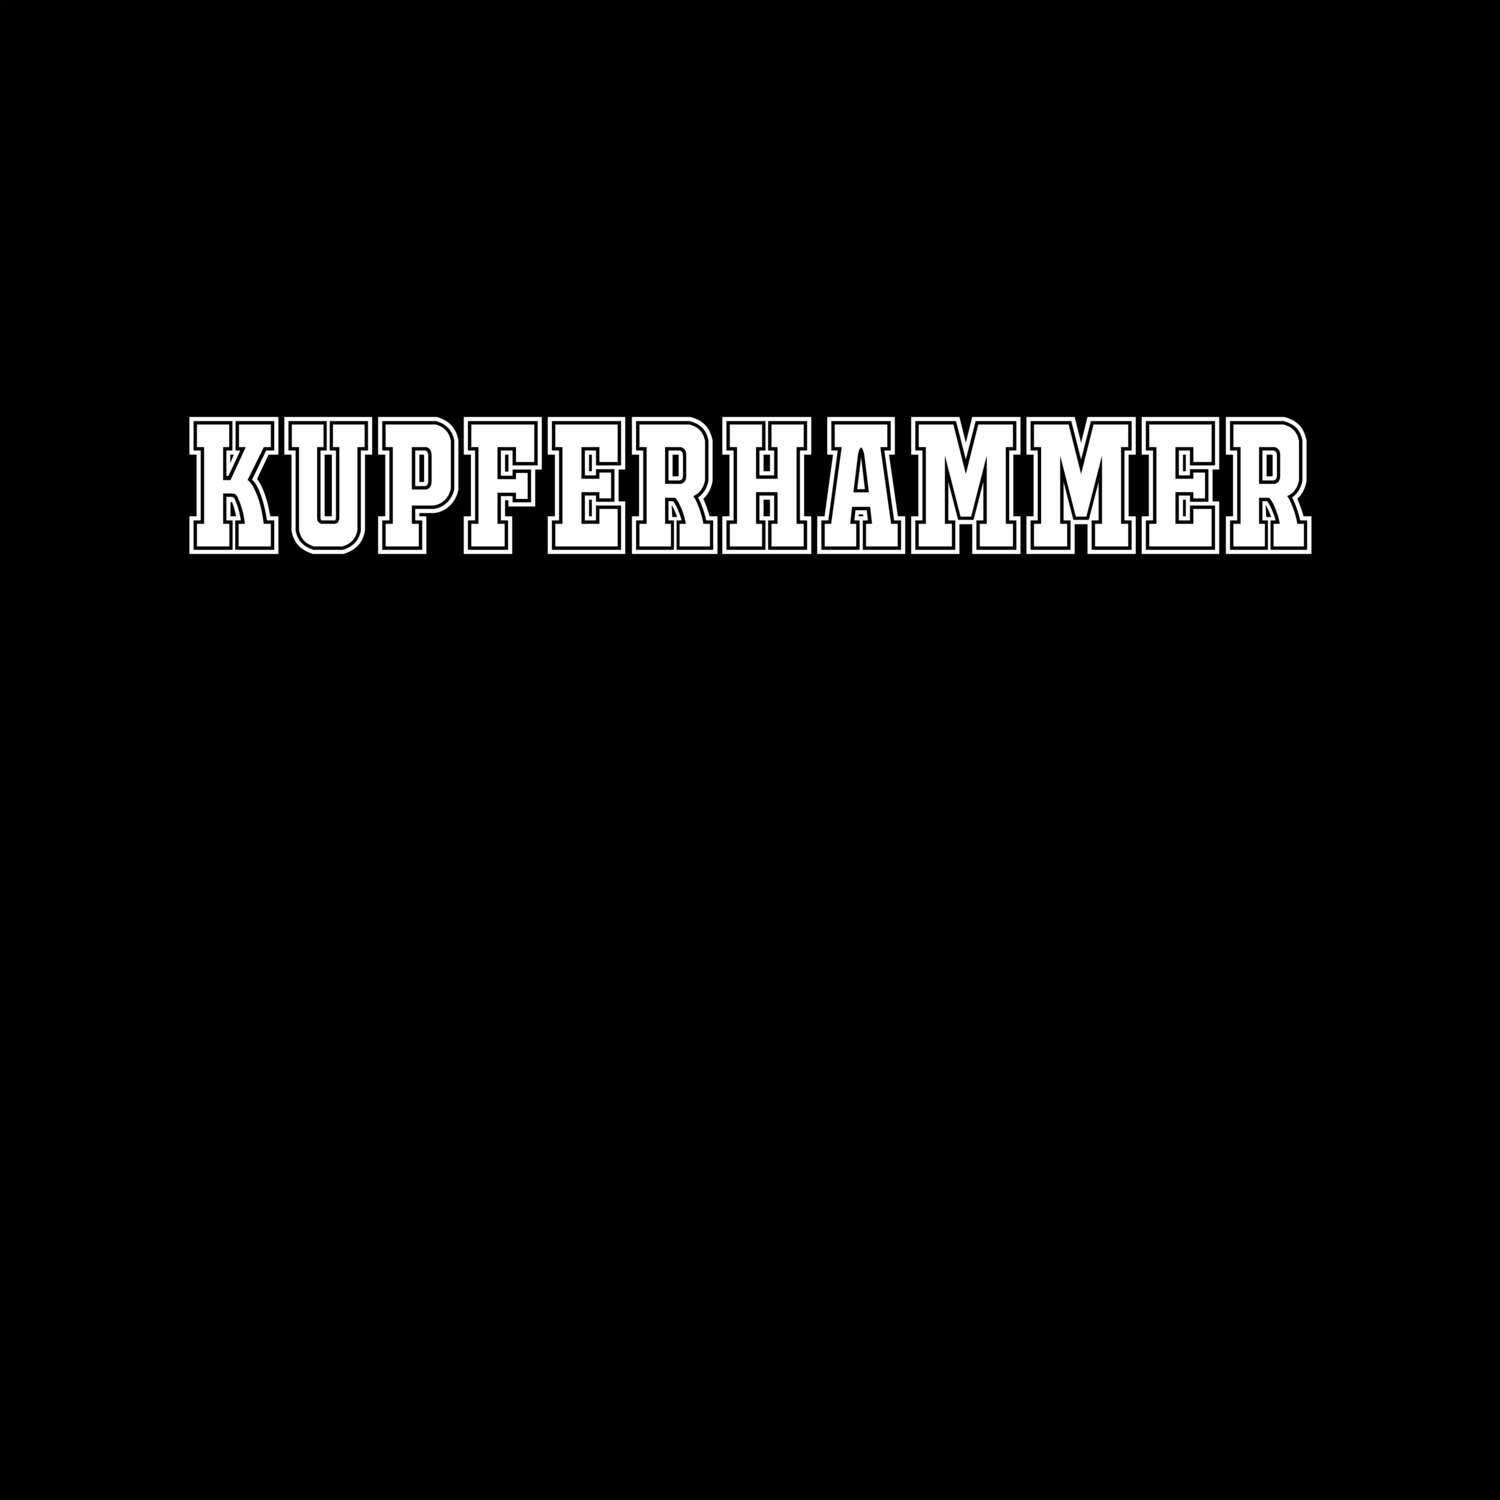 Kupferhammer T-Shirt »Classic«